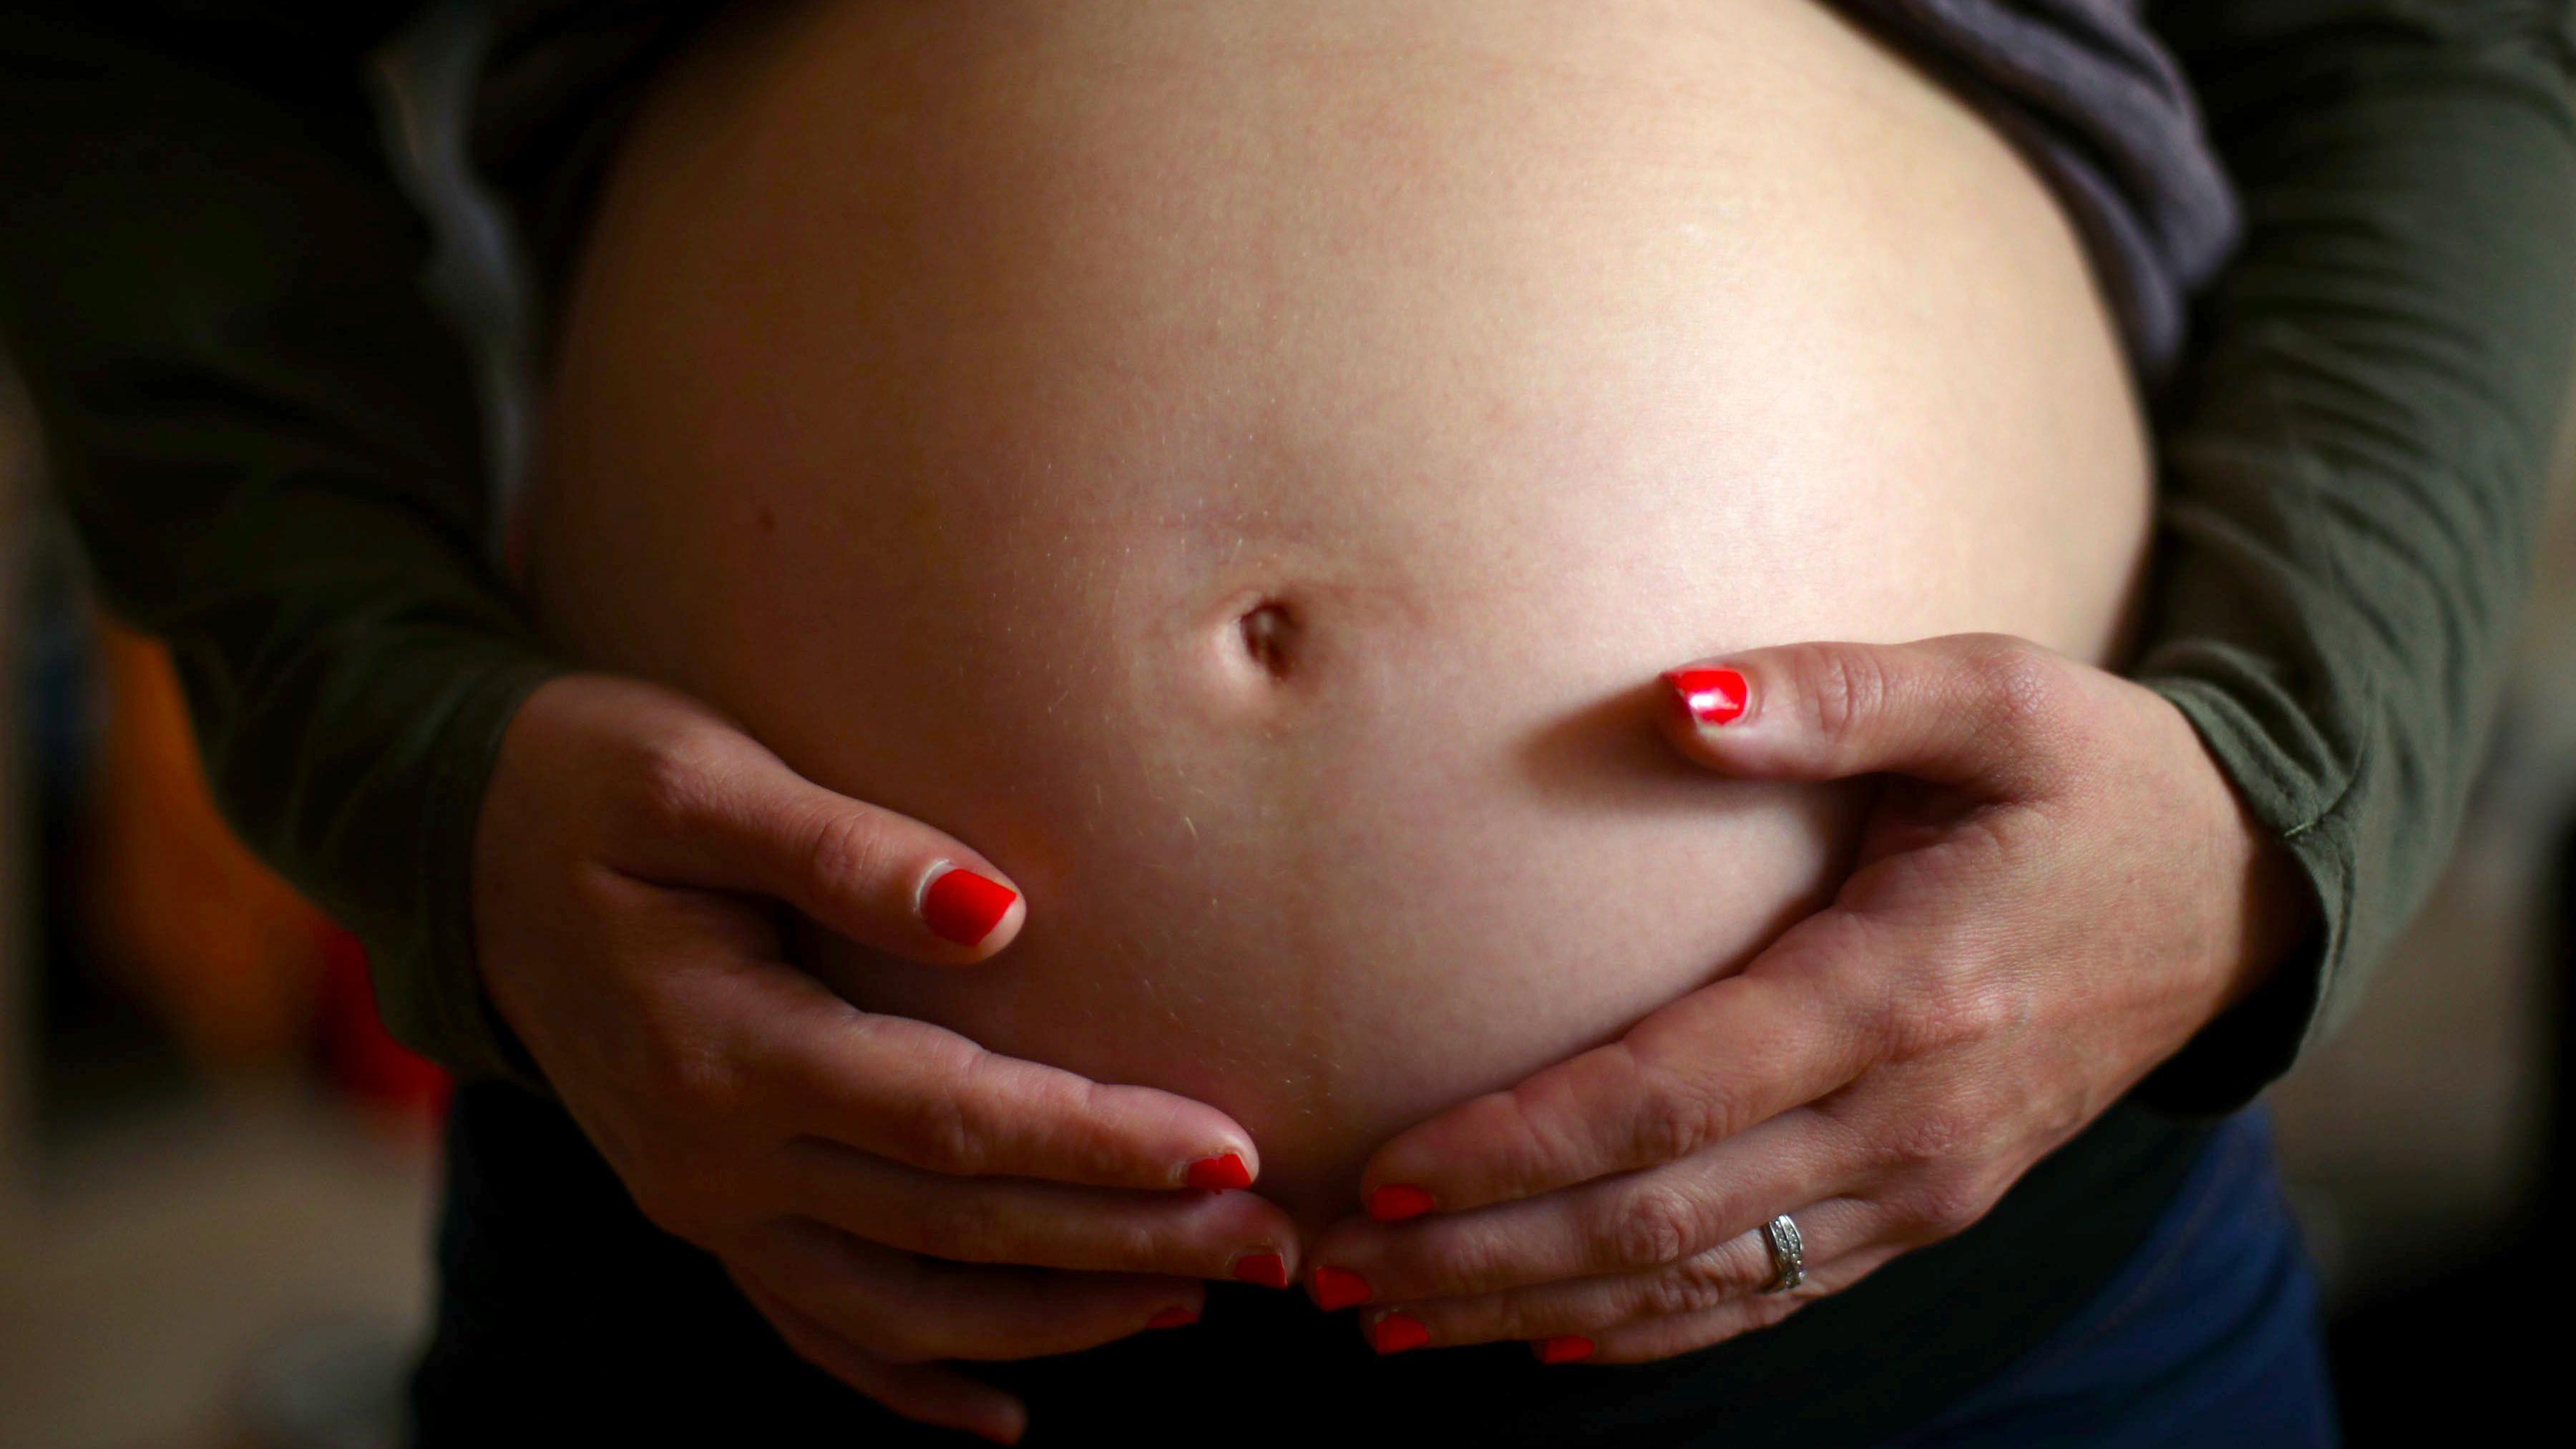 “No me dejaron divorciarme por estar embarazada”: las leyes de EE.UU. que impiden a las mujeres separarse antes del parto